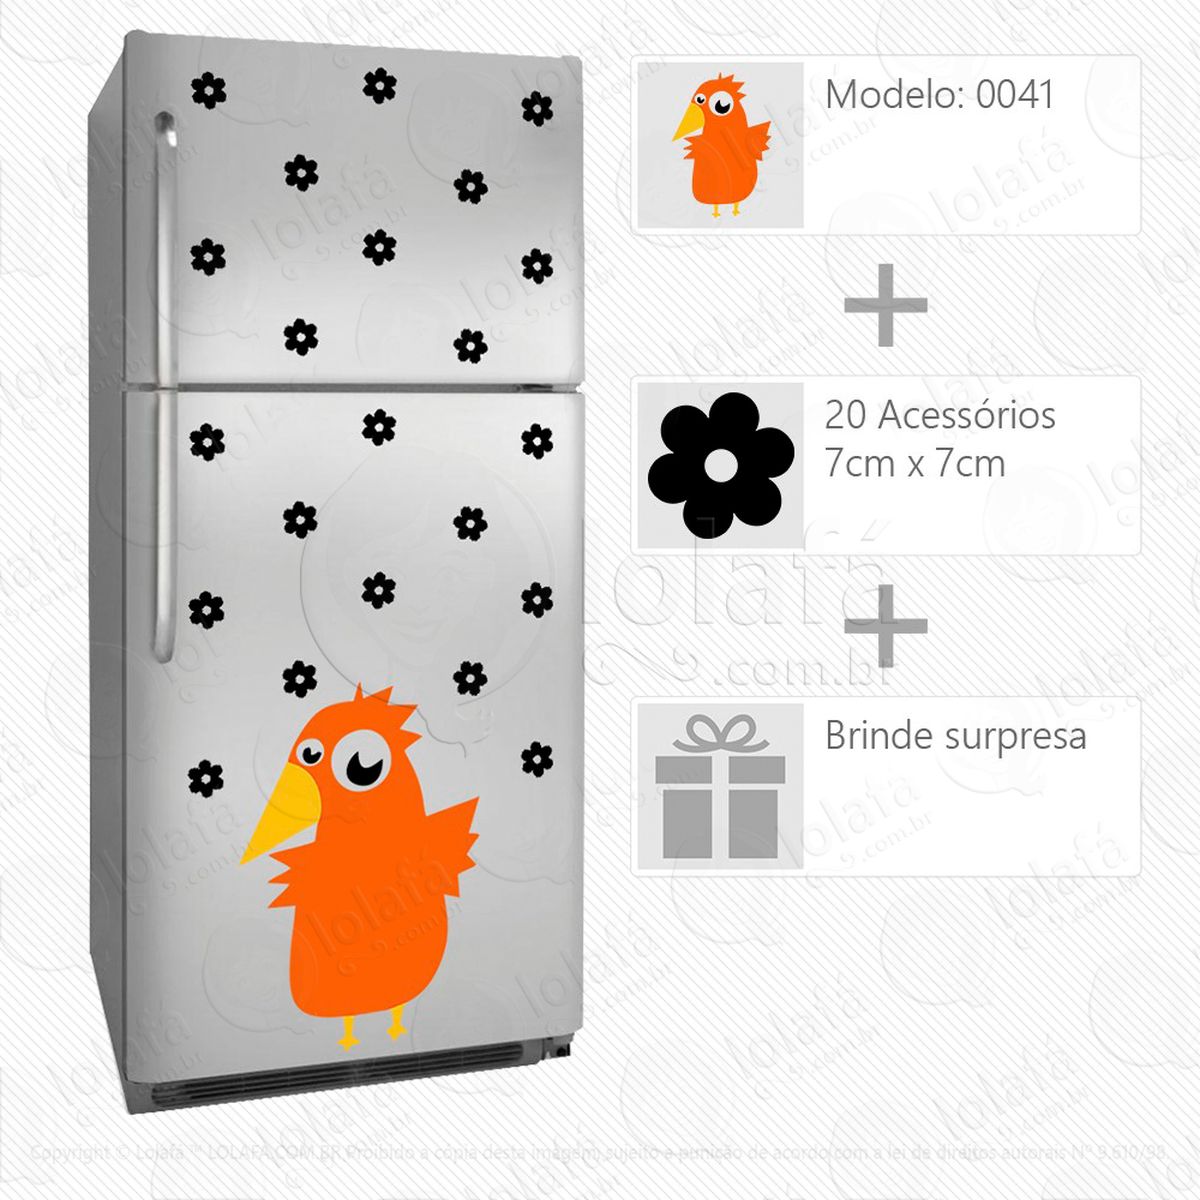 galinha adesivo para geladeira e frigobar - mod:41